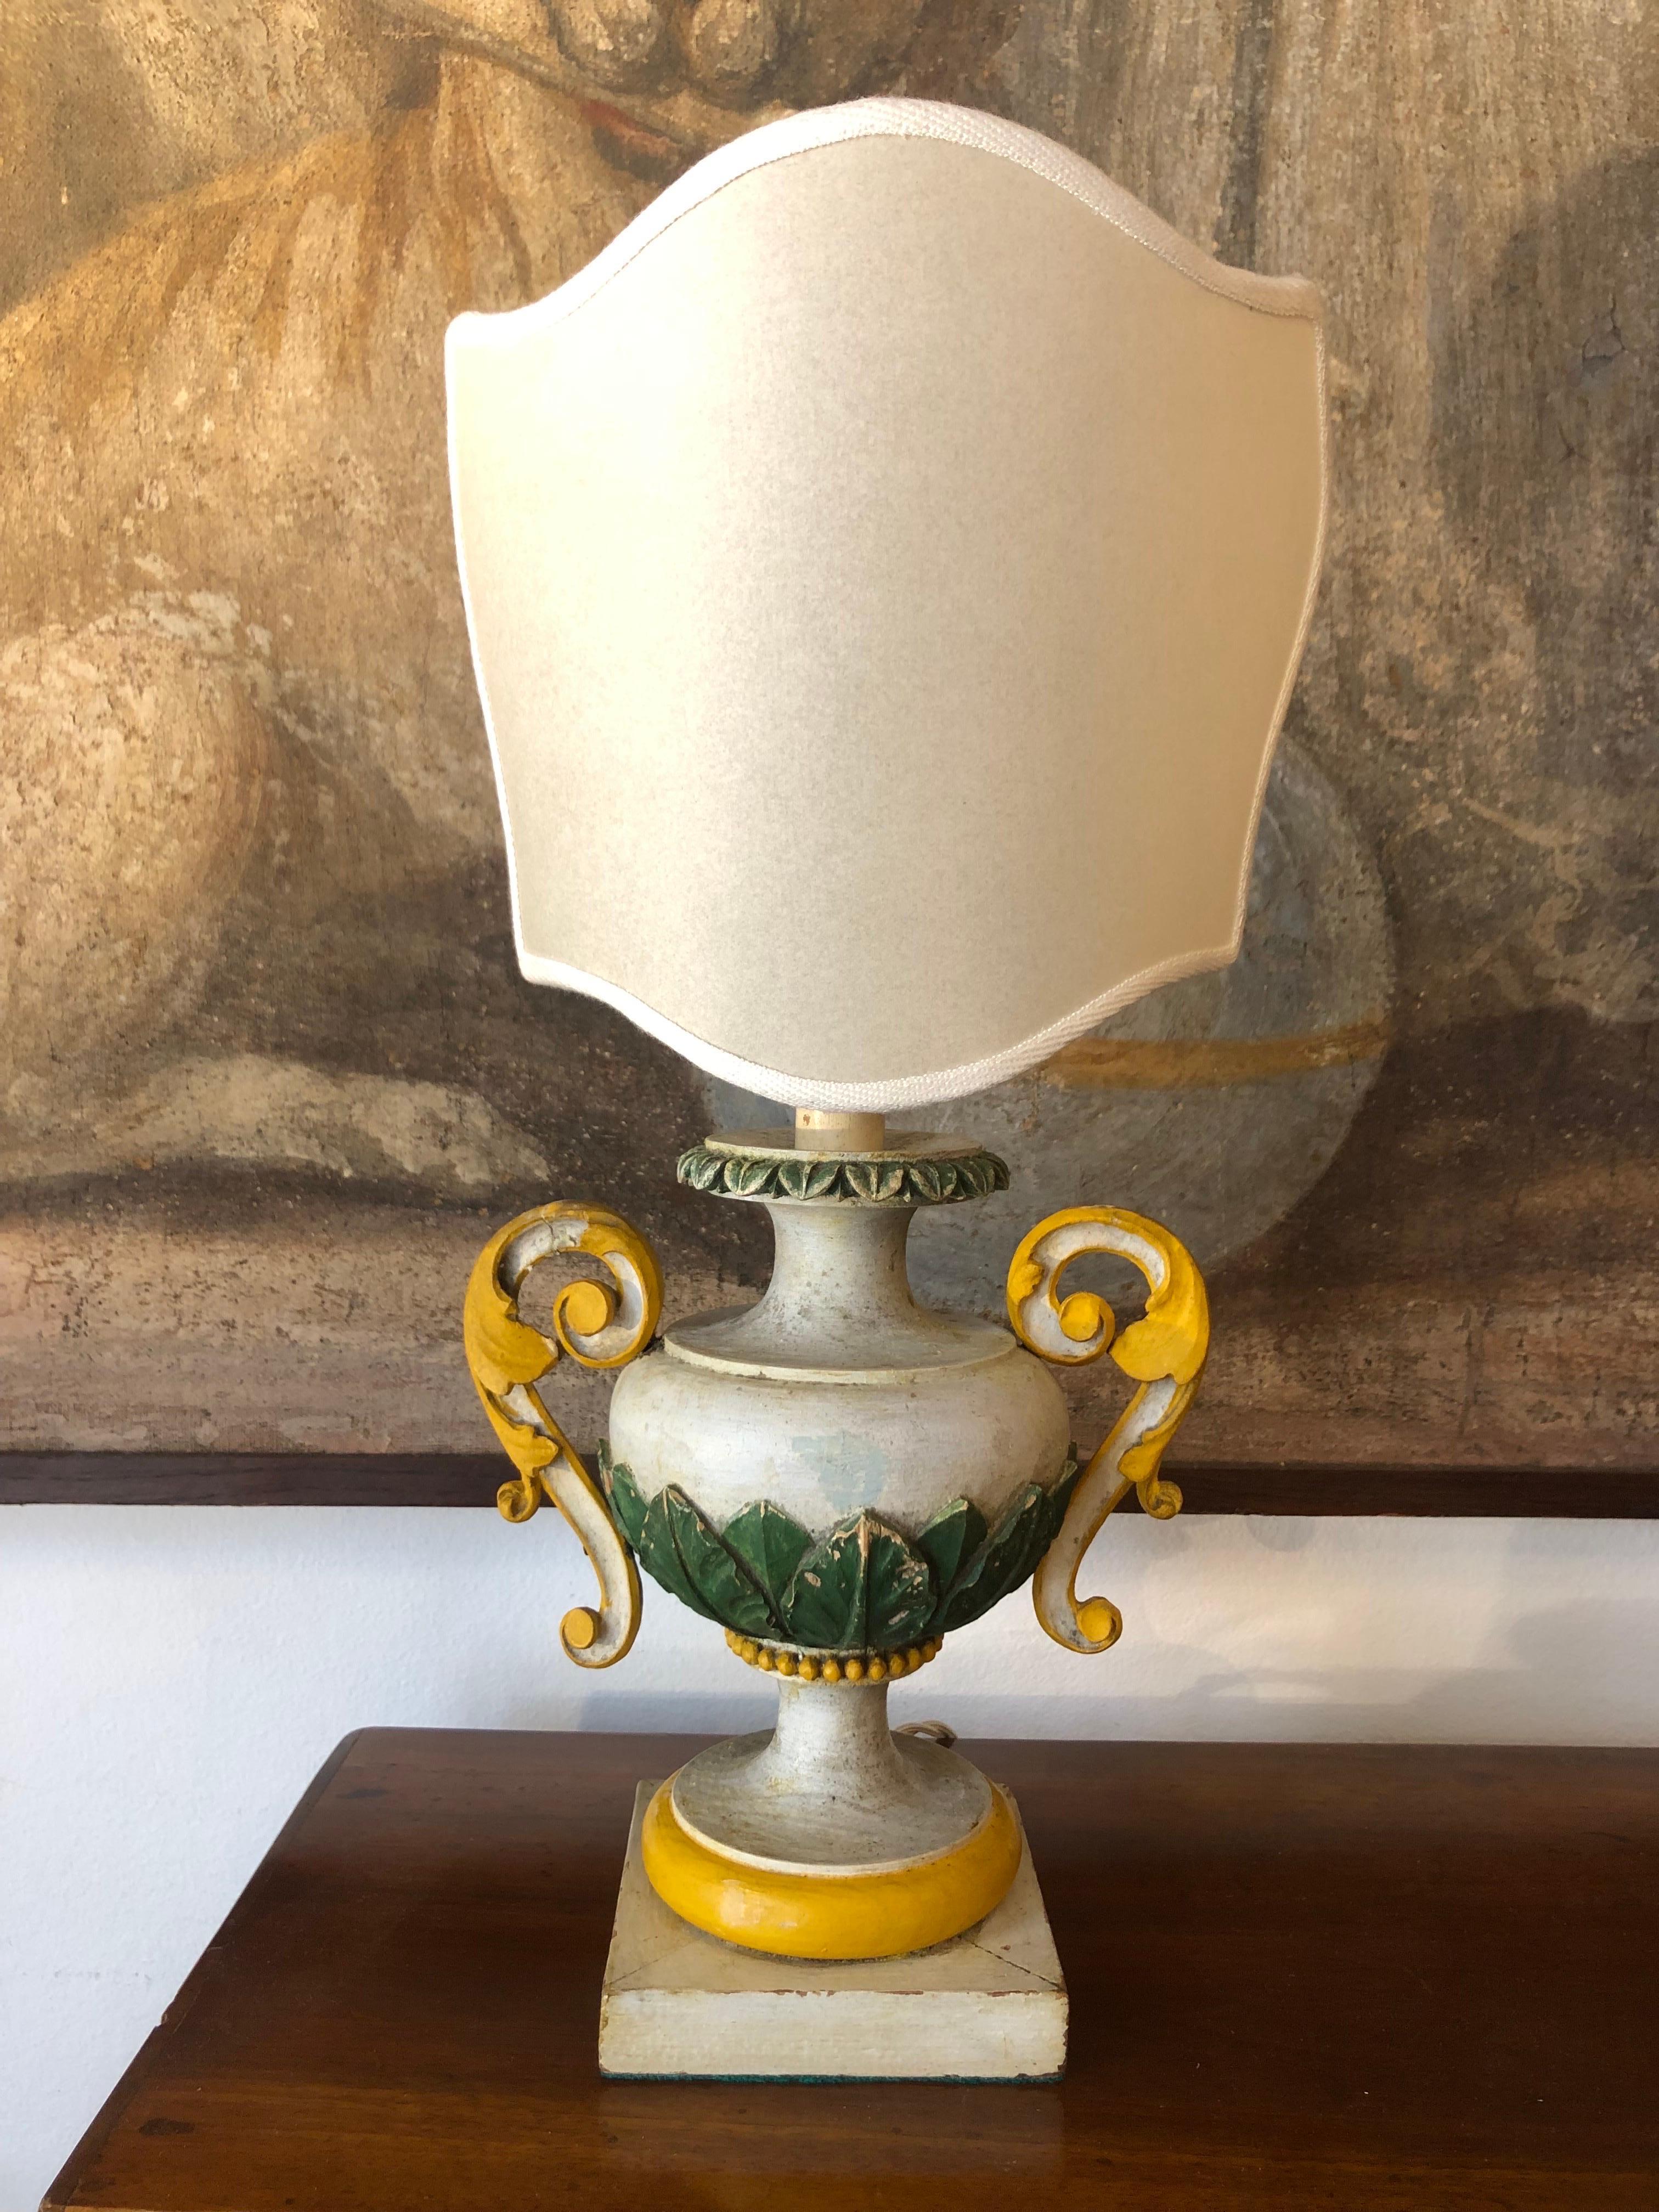 Paire de lampes de chevet italiennes 1800 urnes sculptées et laquées dans des tons de gris, vert et ocre avec un abat-jour en forme de bouclier, utilisant comme bases deux porte-palmiers antiques laqués dans des tons d'ocre et de vert dans